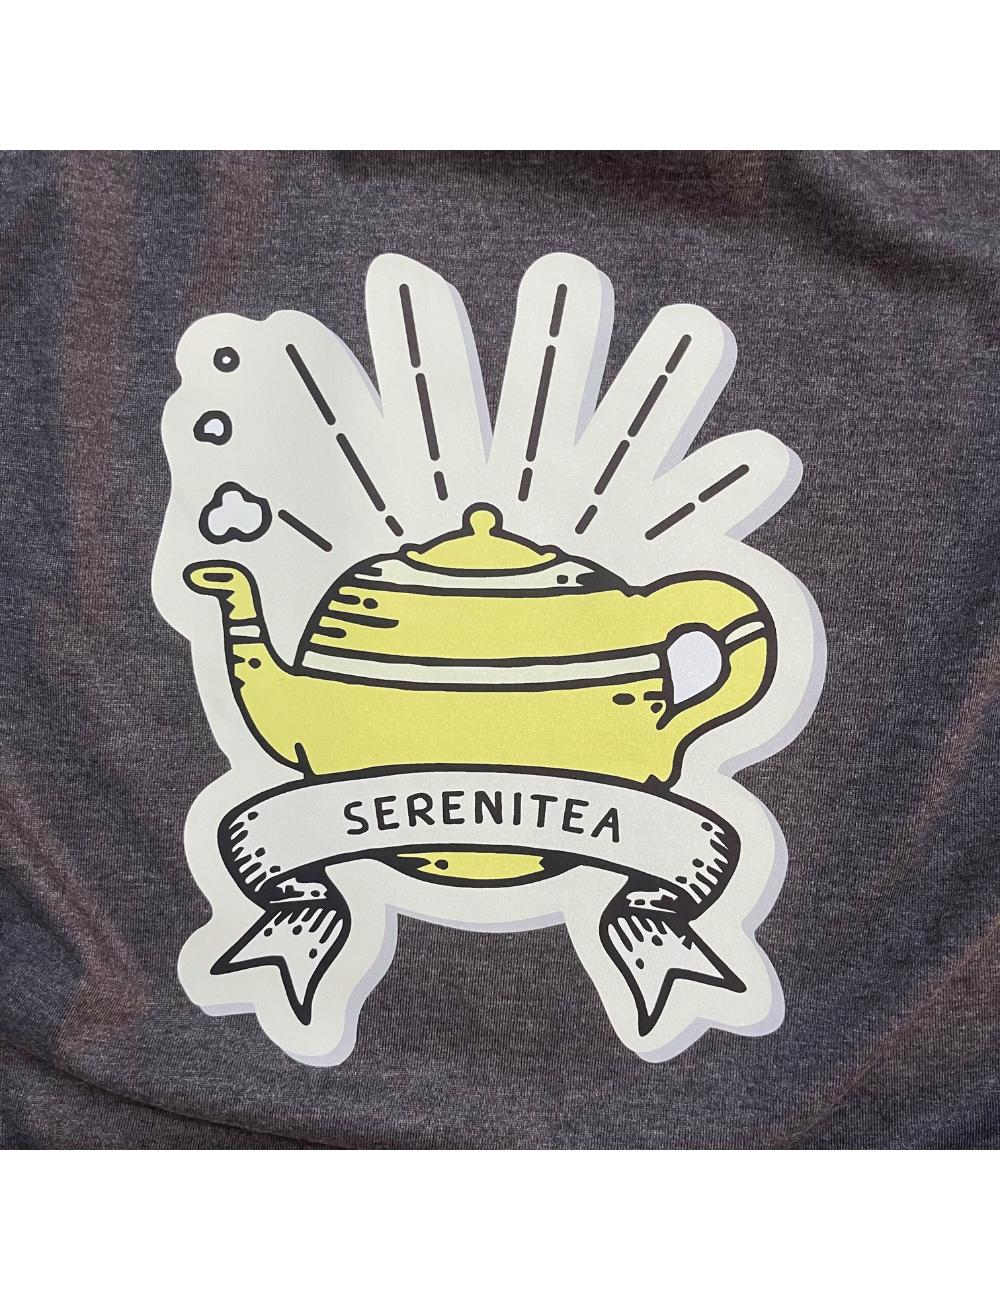 Serenitea - Charcoal Gray - Regular Fit 100% Cotton T-Shirt